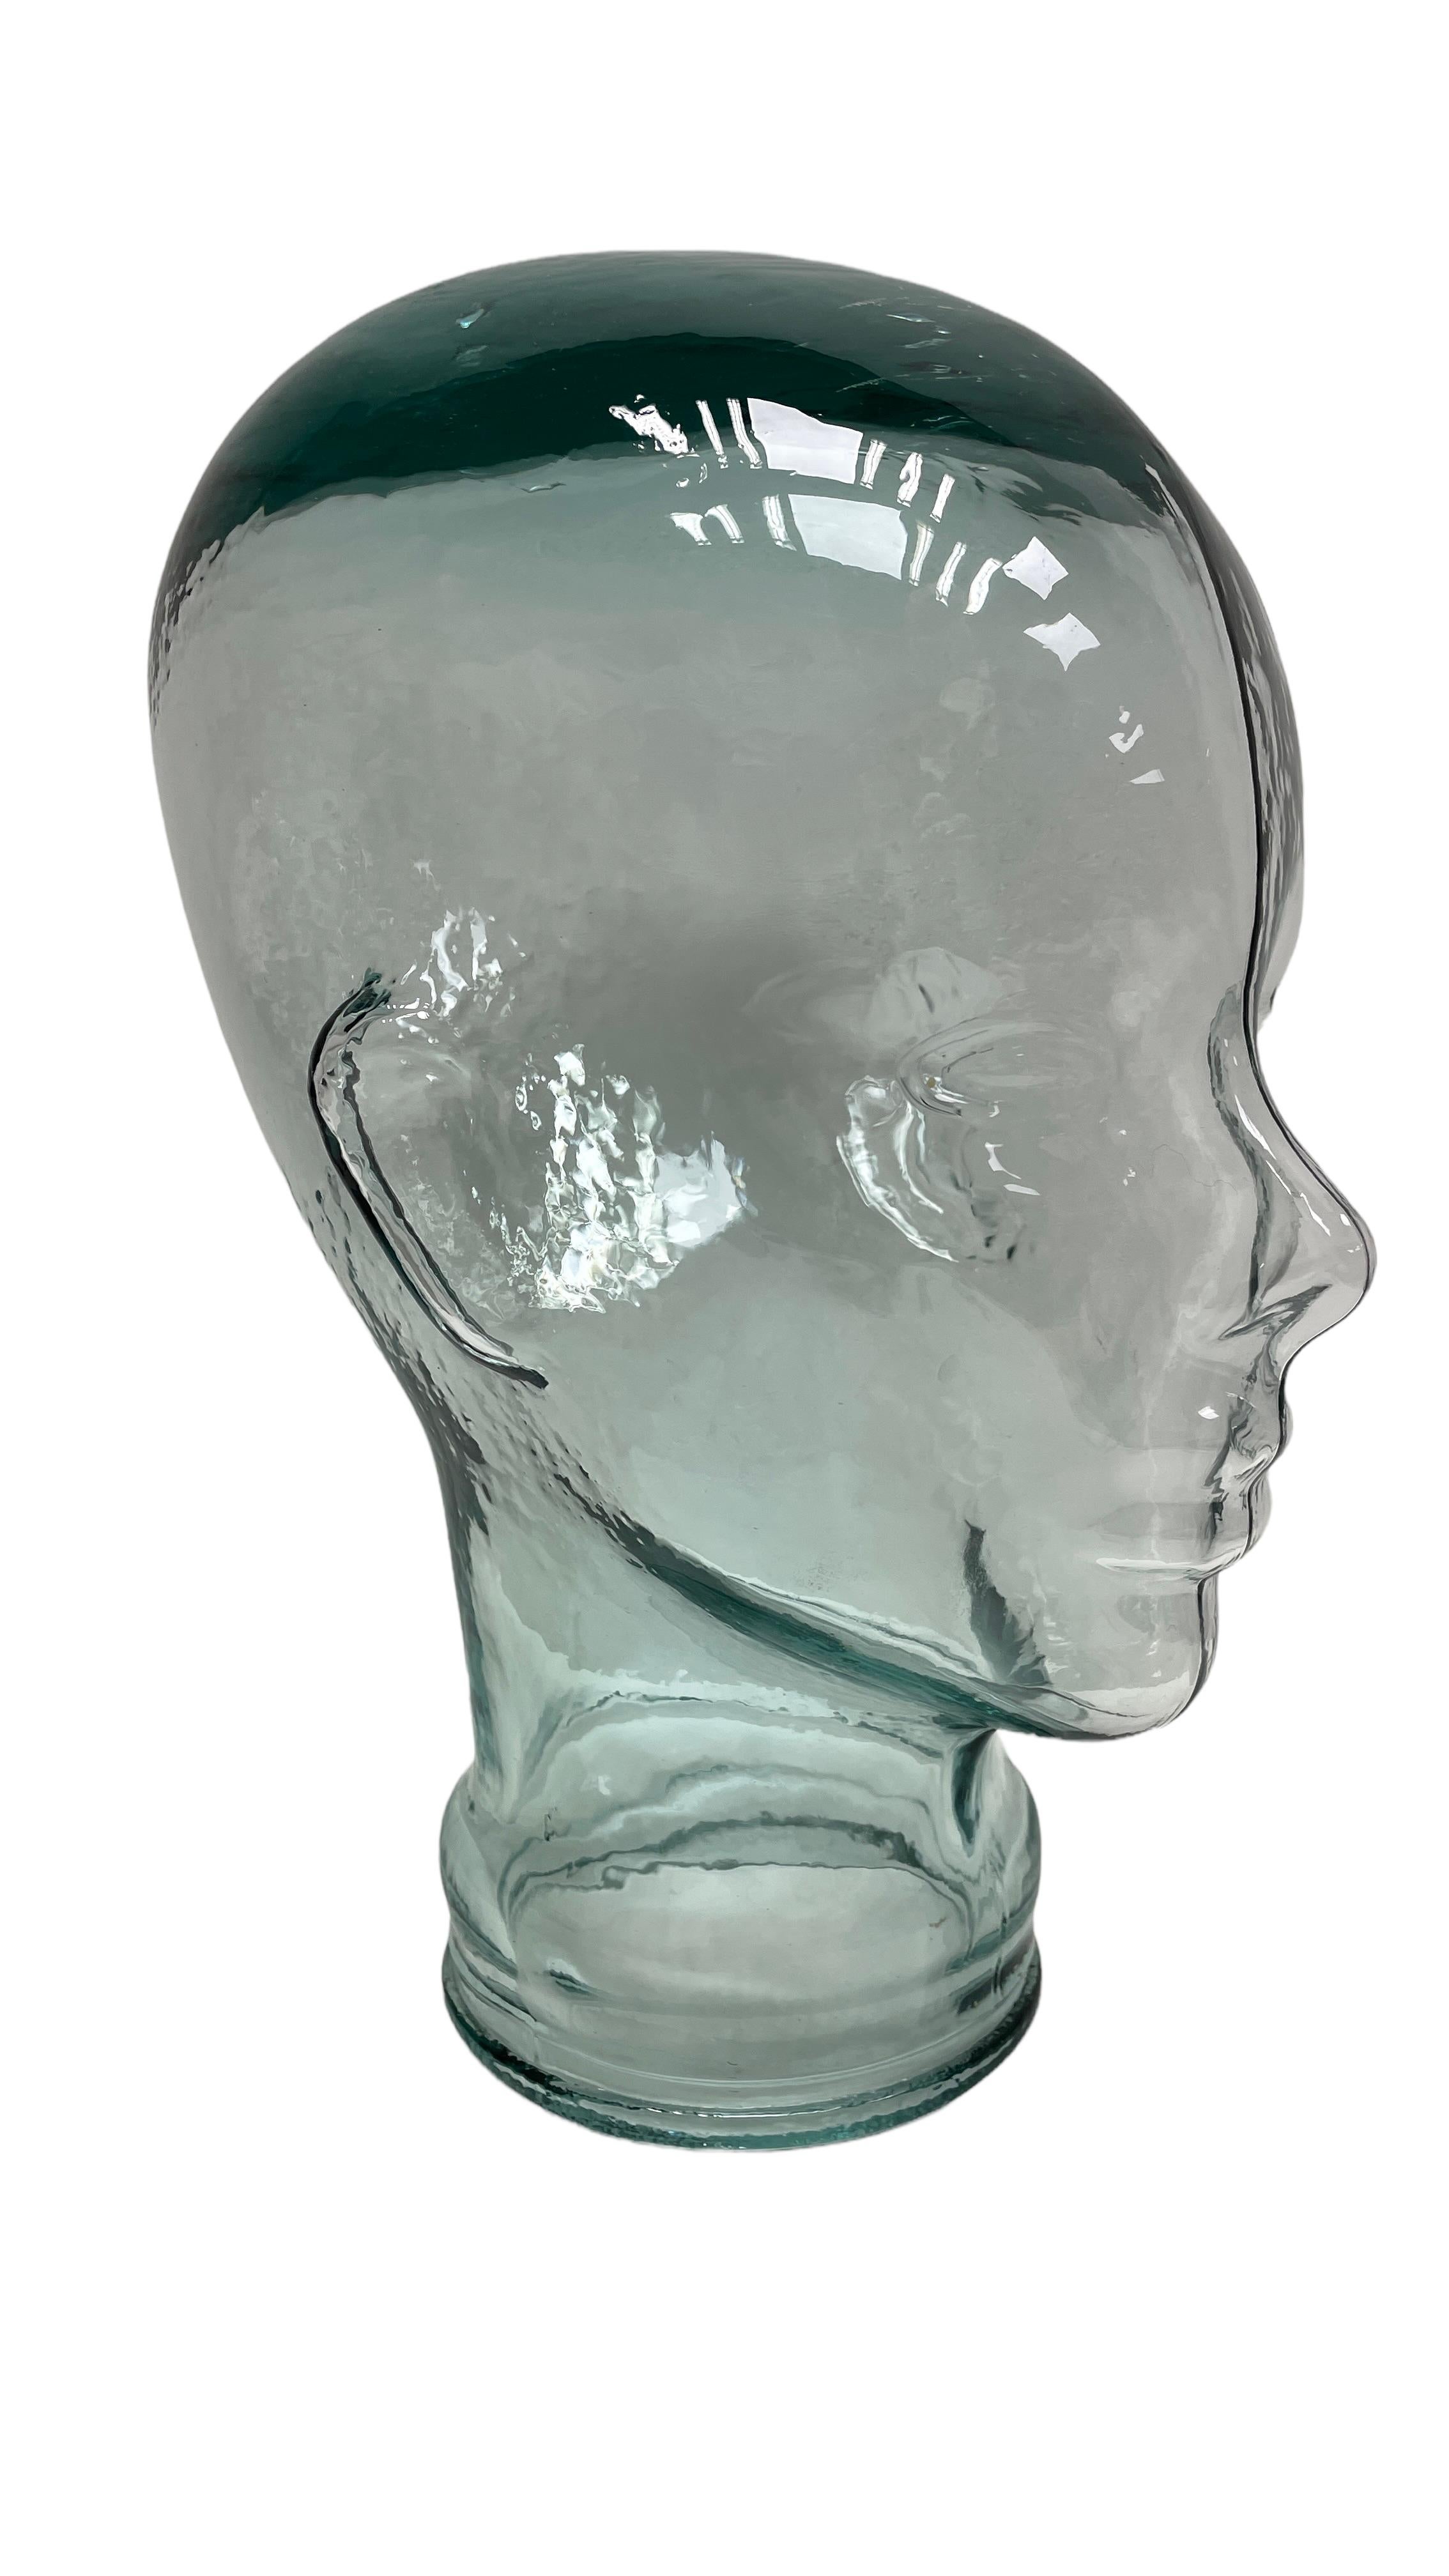 Schöner lebensgroßer Glaskopf in einer einzigartigen transparenten Farbe. Gefunden bei einem Nachlassverkauf in Wien Österreich. Perfekter Zustand. Eine perfekte Ergänzung für die Inneneinrichtung, als Fotostütze, Display oder Kopfhörerständer. Eine